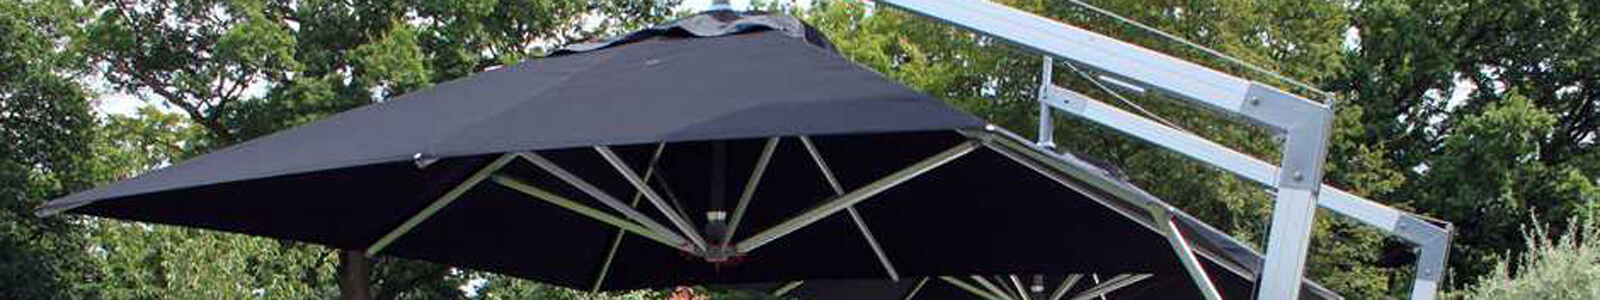 Bambrella Umbrellas & Outdoor Umbrella Sale Banner